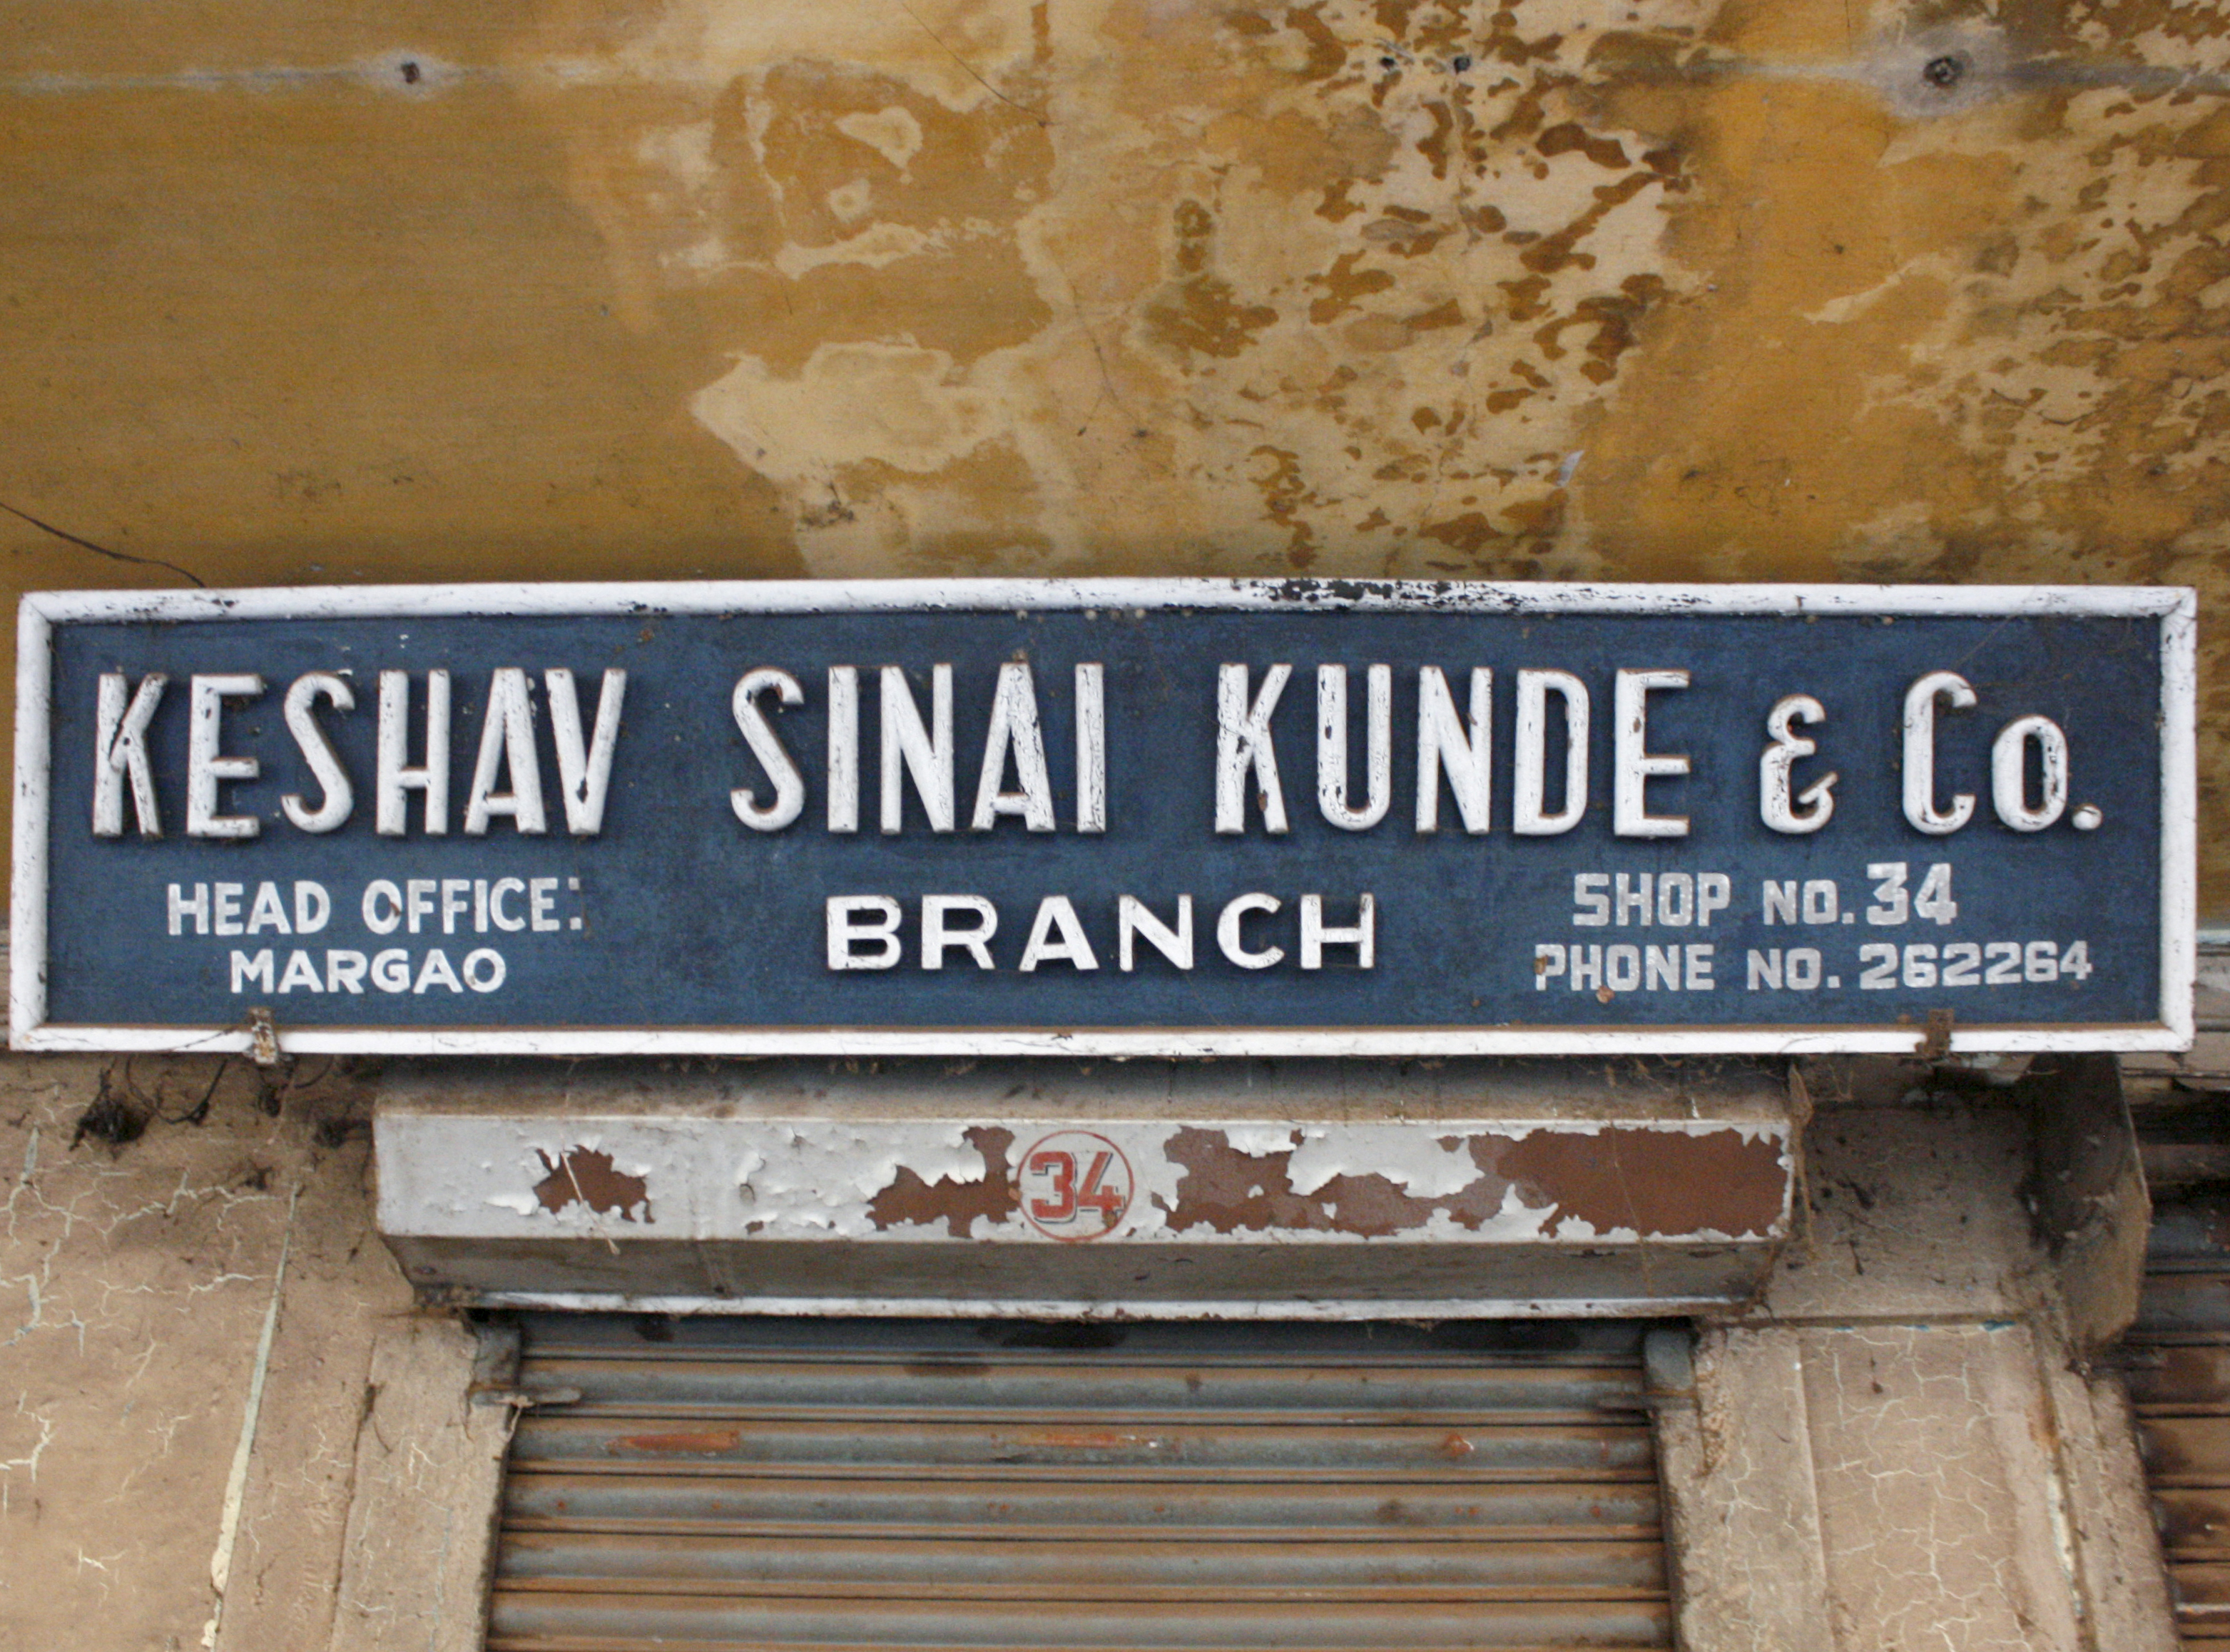 Keshav Sinai Kunde & Co.